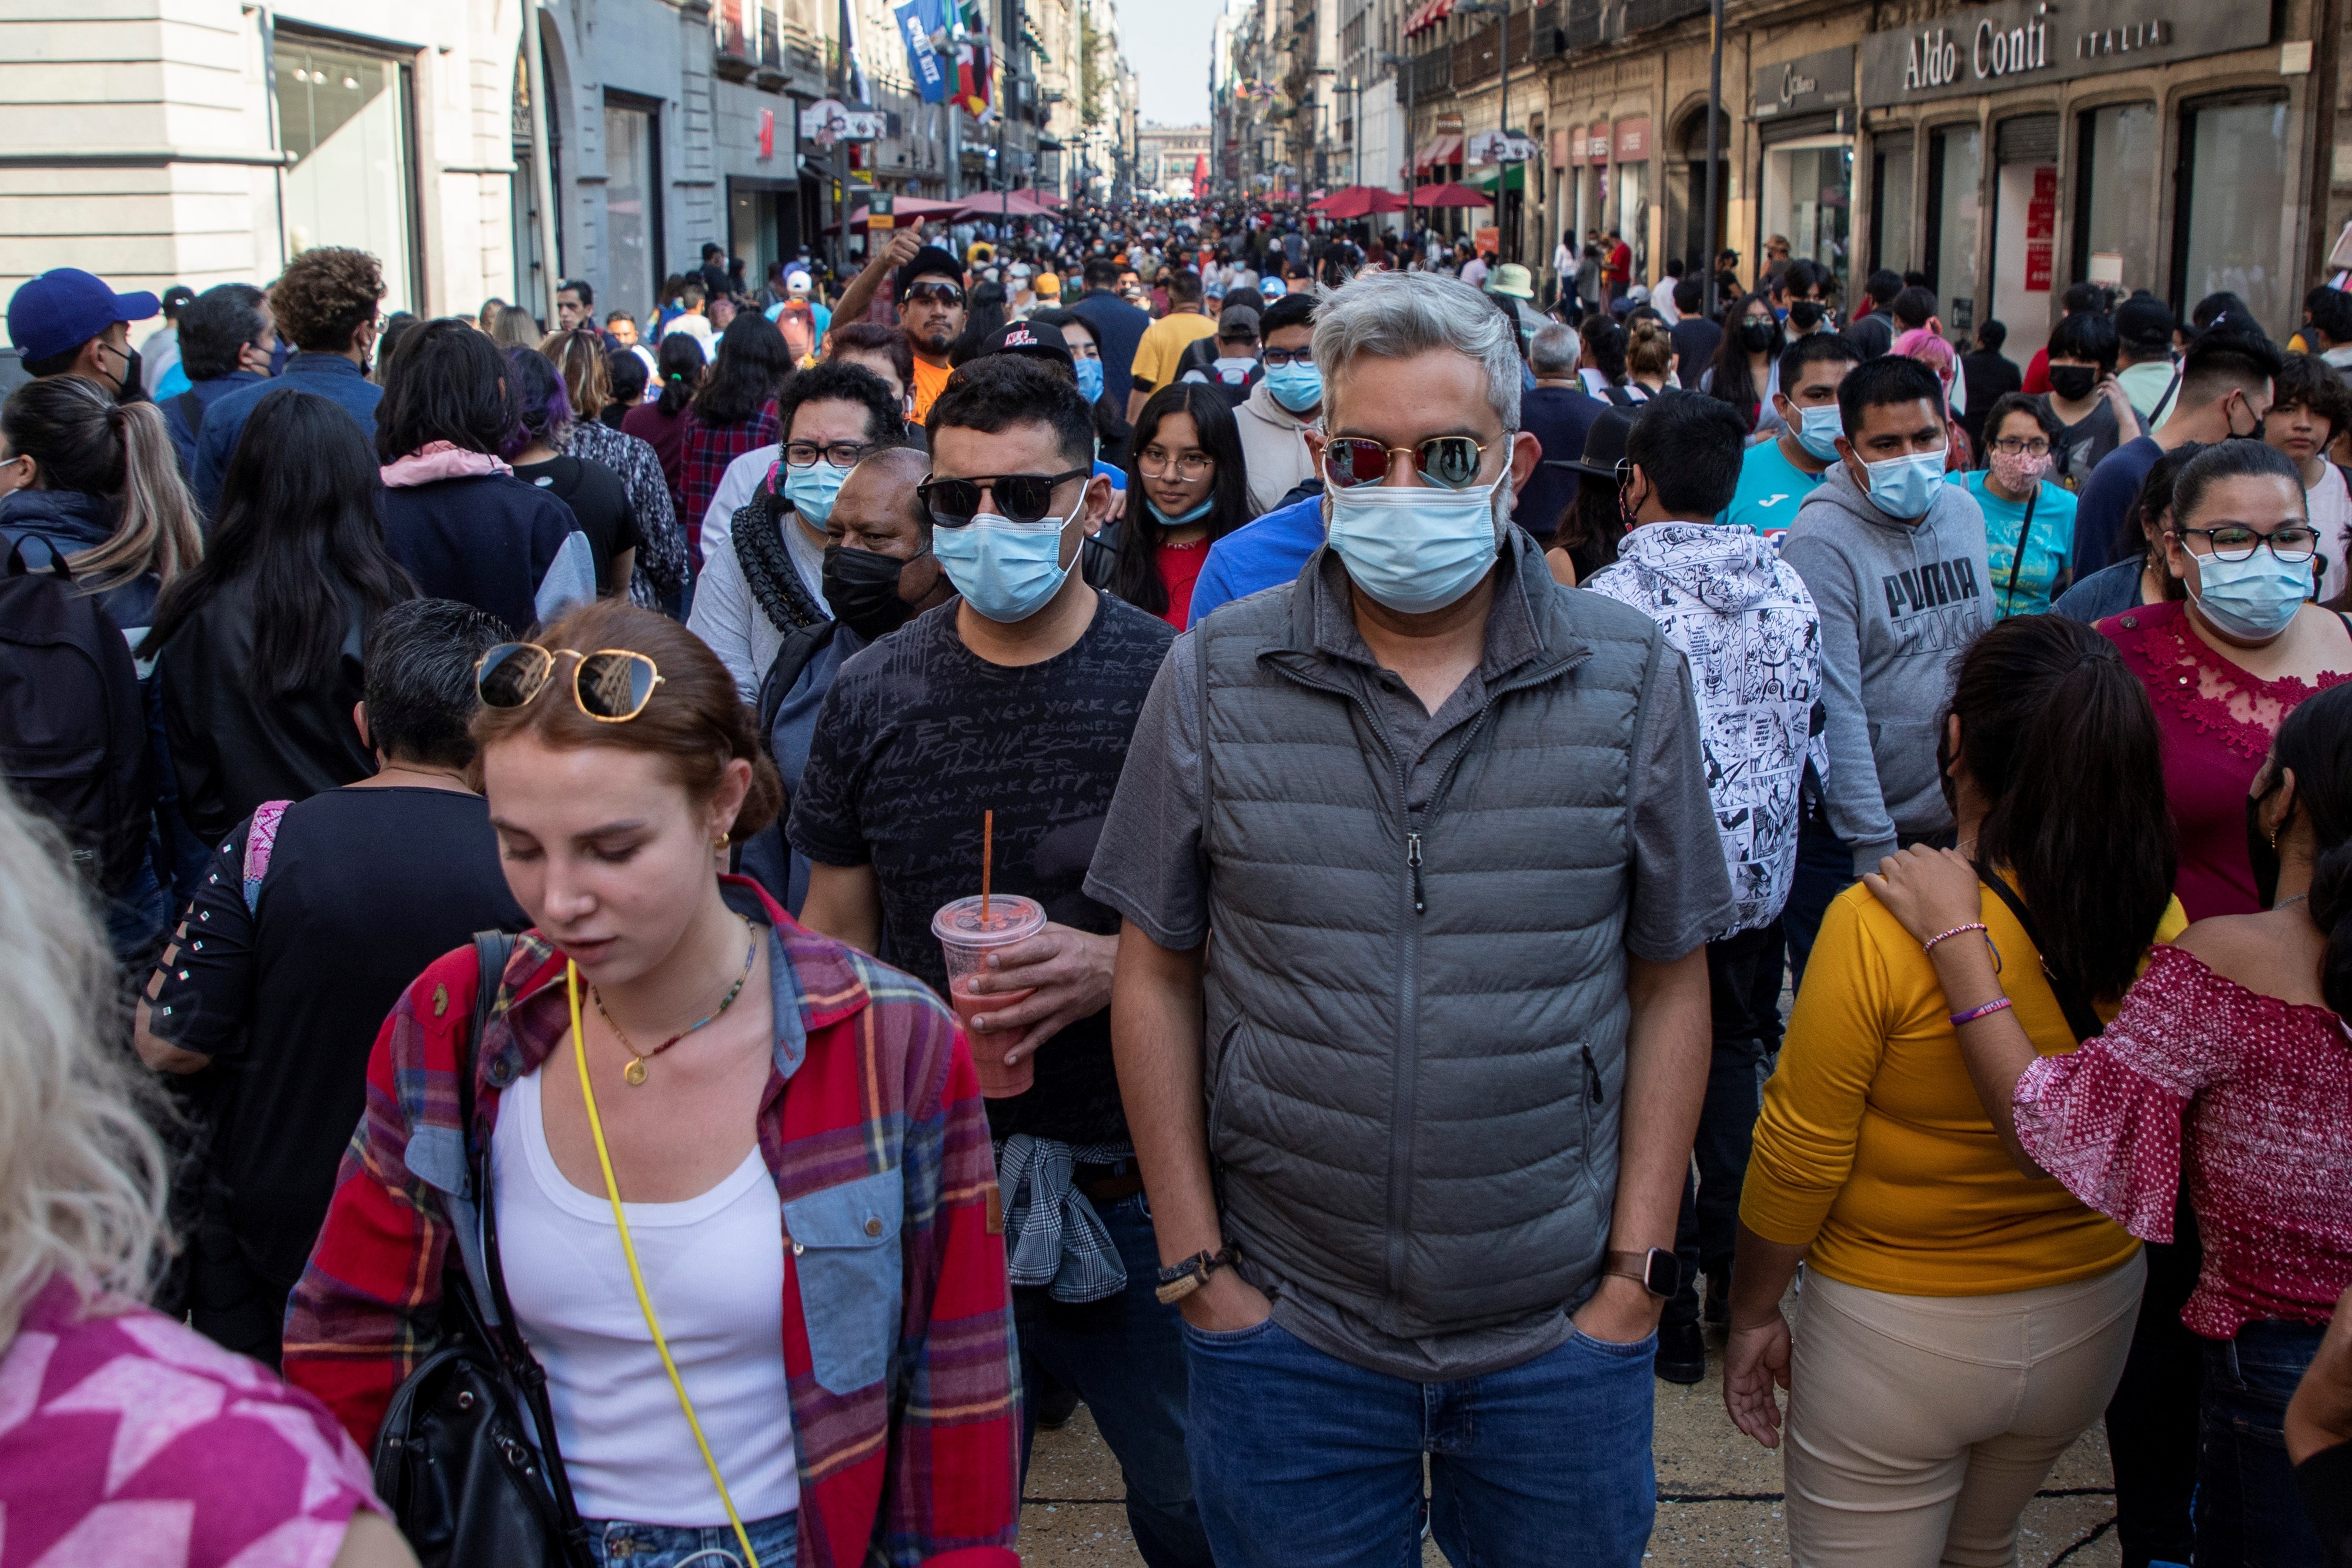 Personas con cubrebocas caminan por calles del centro histórico de la Ciudad de México. (FOTO: EFE/Madla Hartz)
